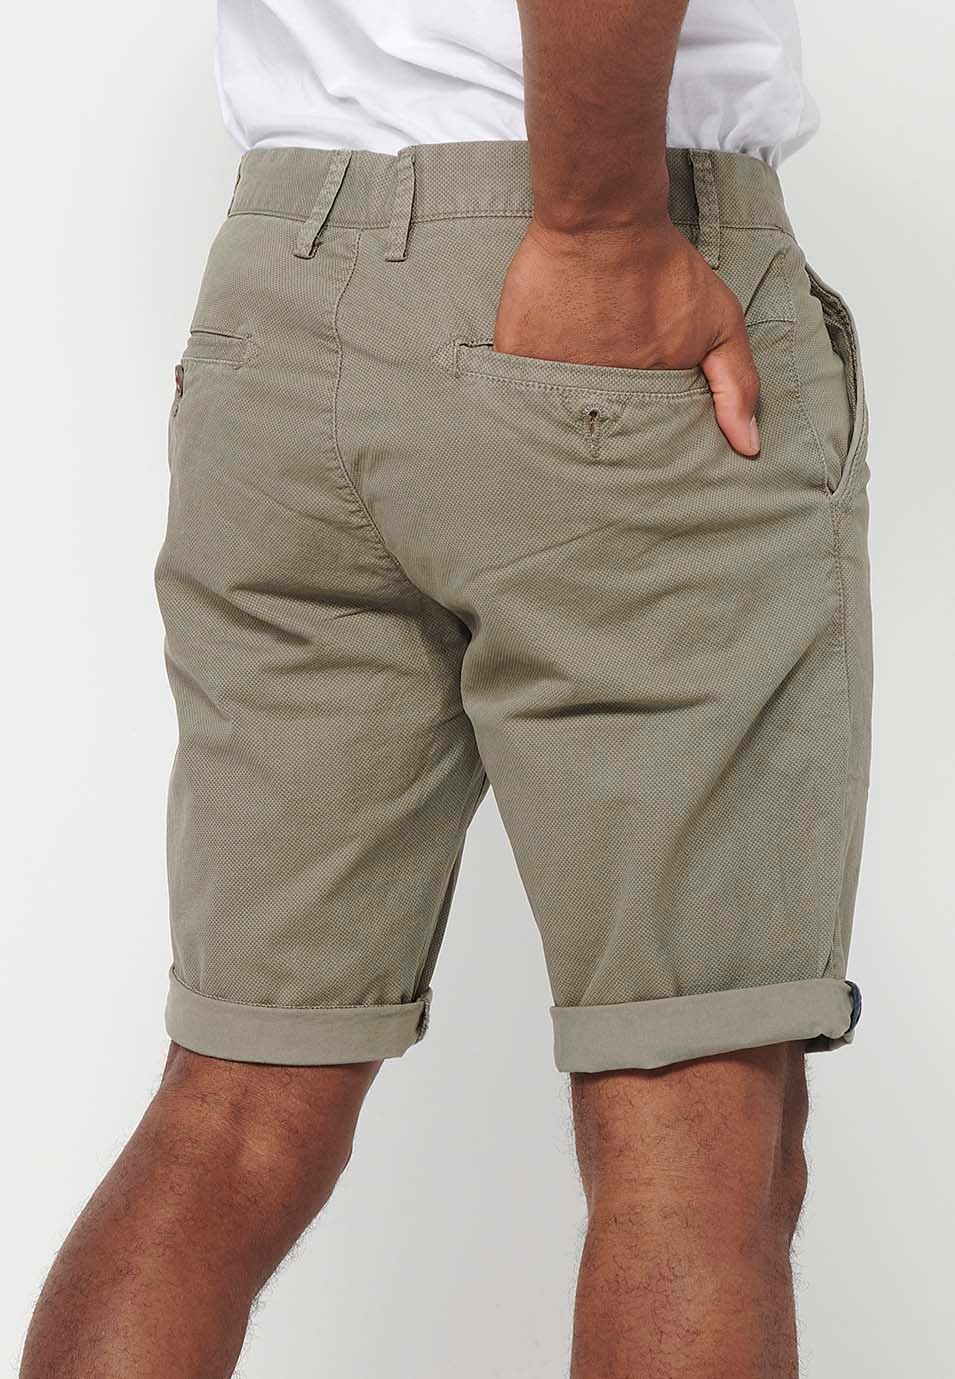 Herren-Bermuda-Chino-Shorts mit Umschlag, Reißverschluss vorne und Knopfverschluss sowie vier Taschen in Nerzfarbe 5